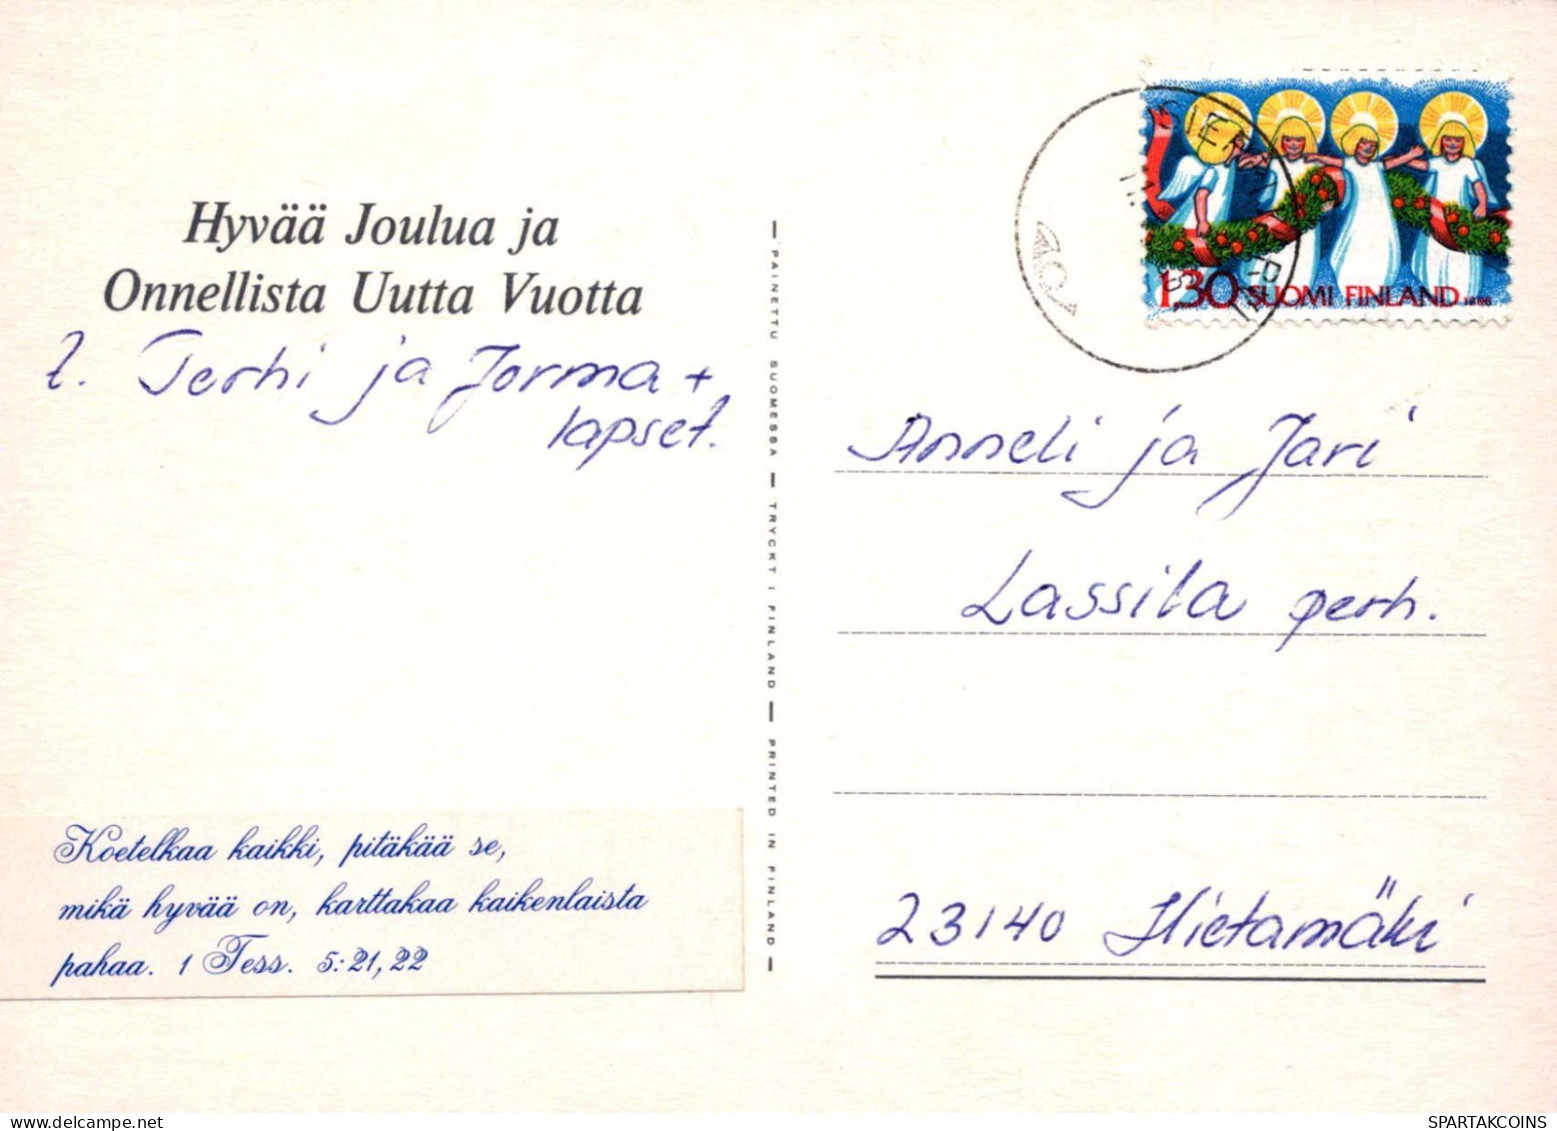 Virgen Mary Madonna Baby JESUS Christmas Religion Vintage Postcard CPSM #PBB732.A - Virgen Maria Y Las Madonnas